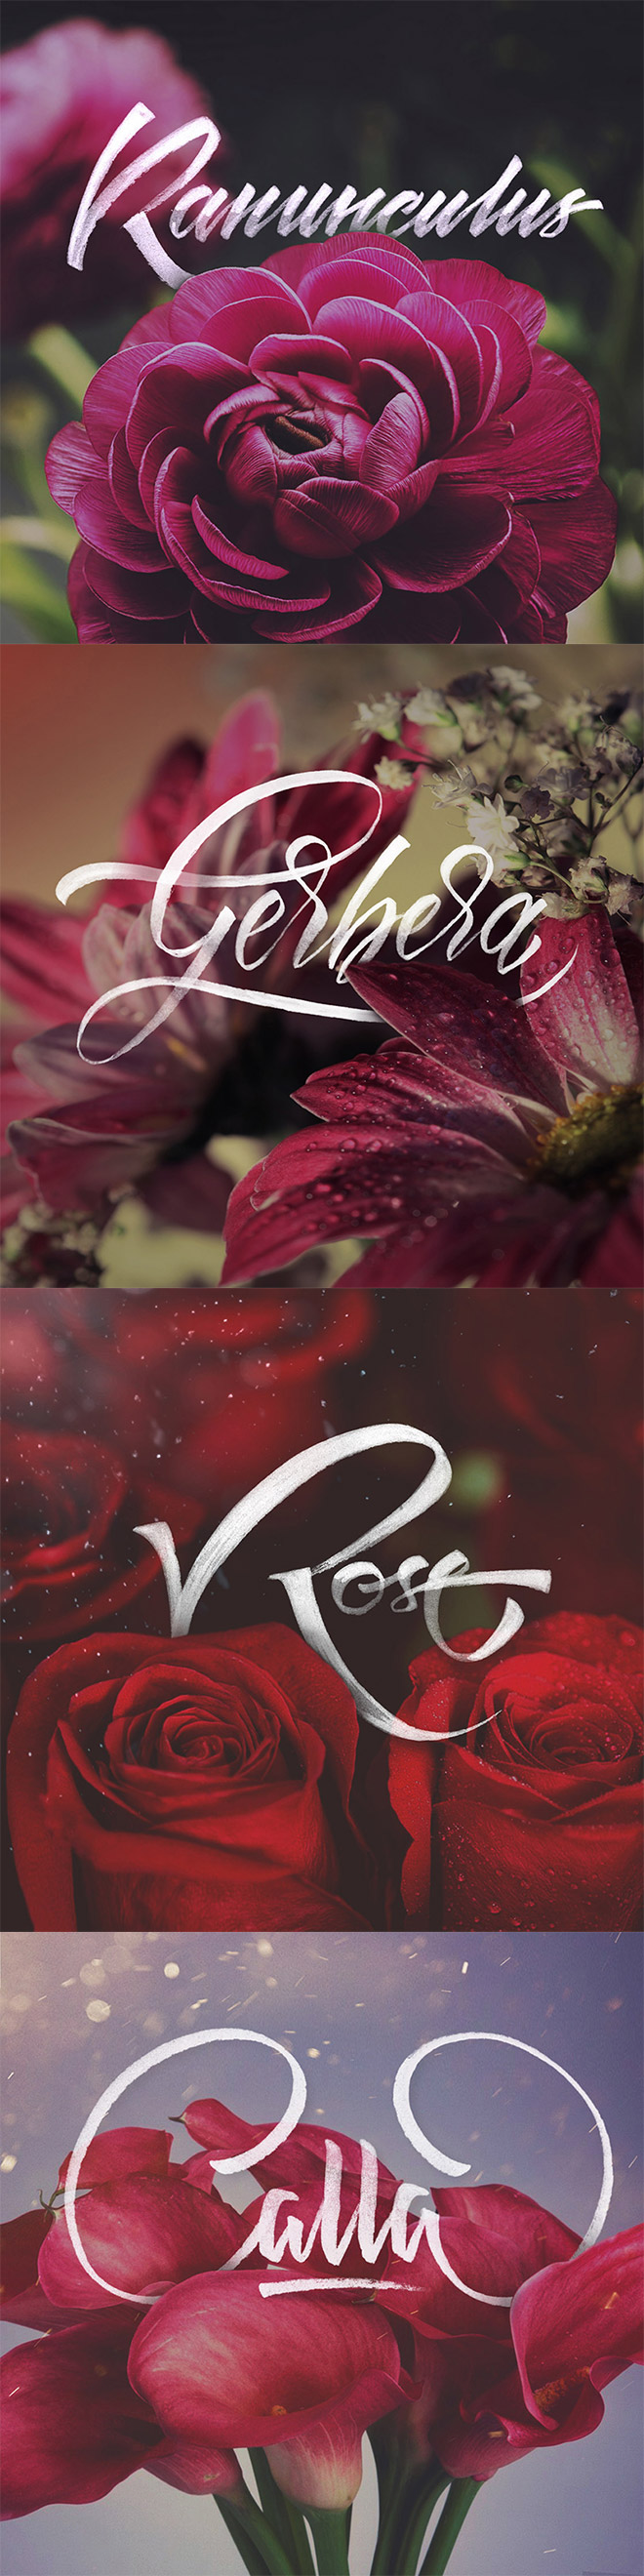 rgb_40-thiet-ke-floral-typography_07